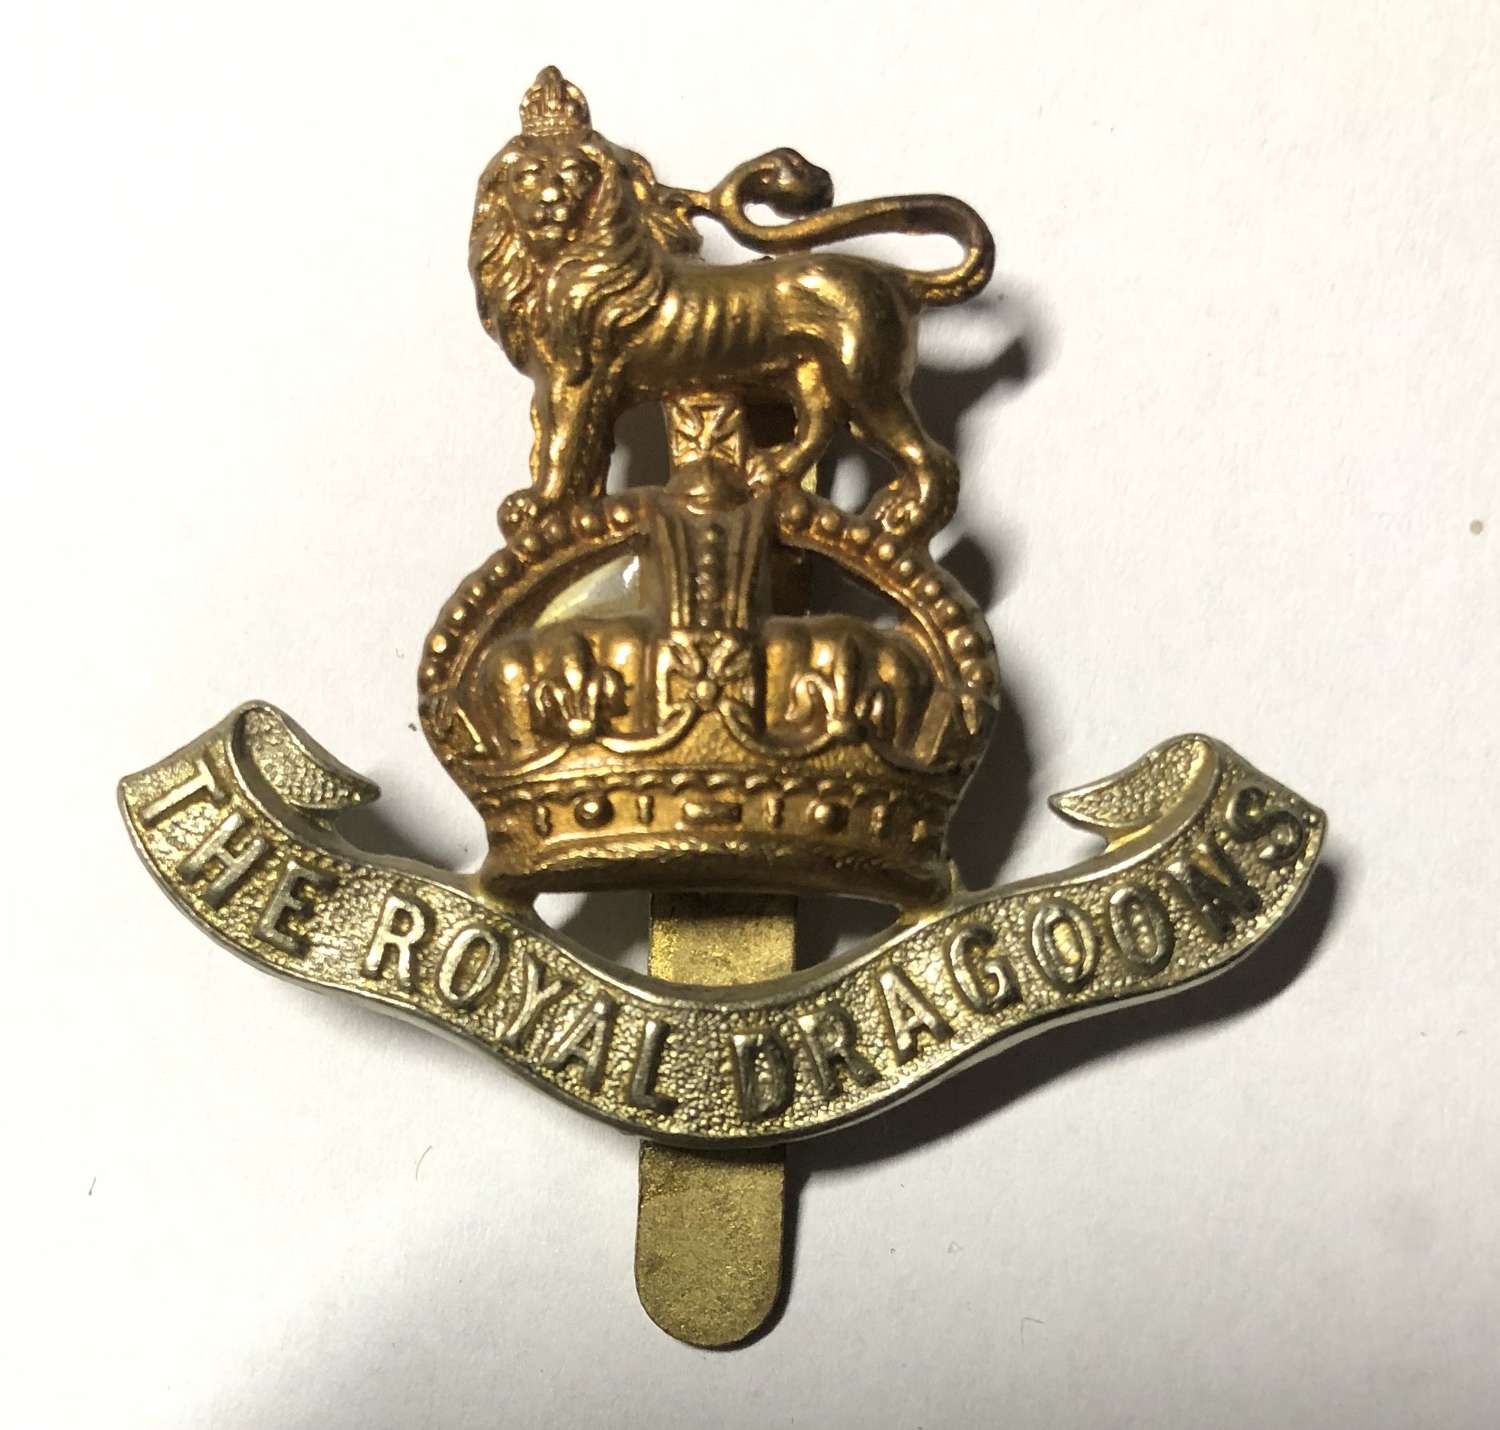 Royal Dragoons cap badge circa 1901-15